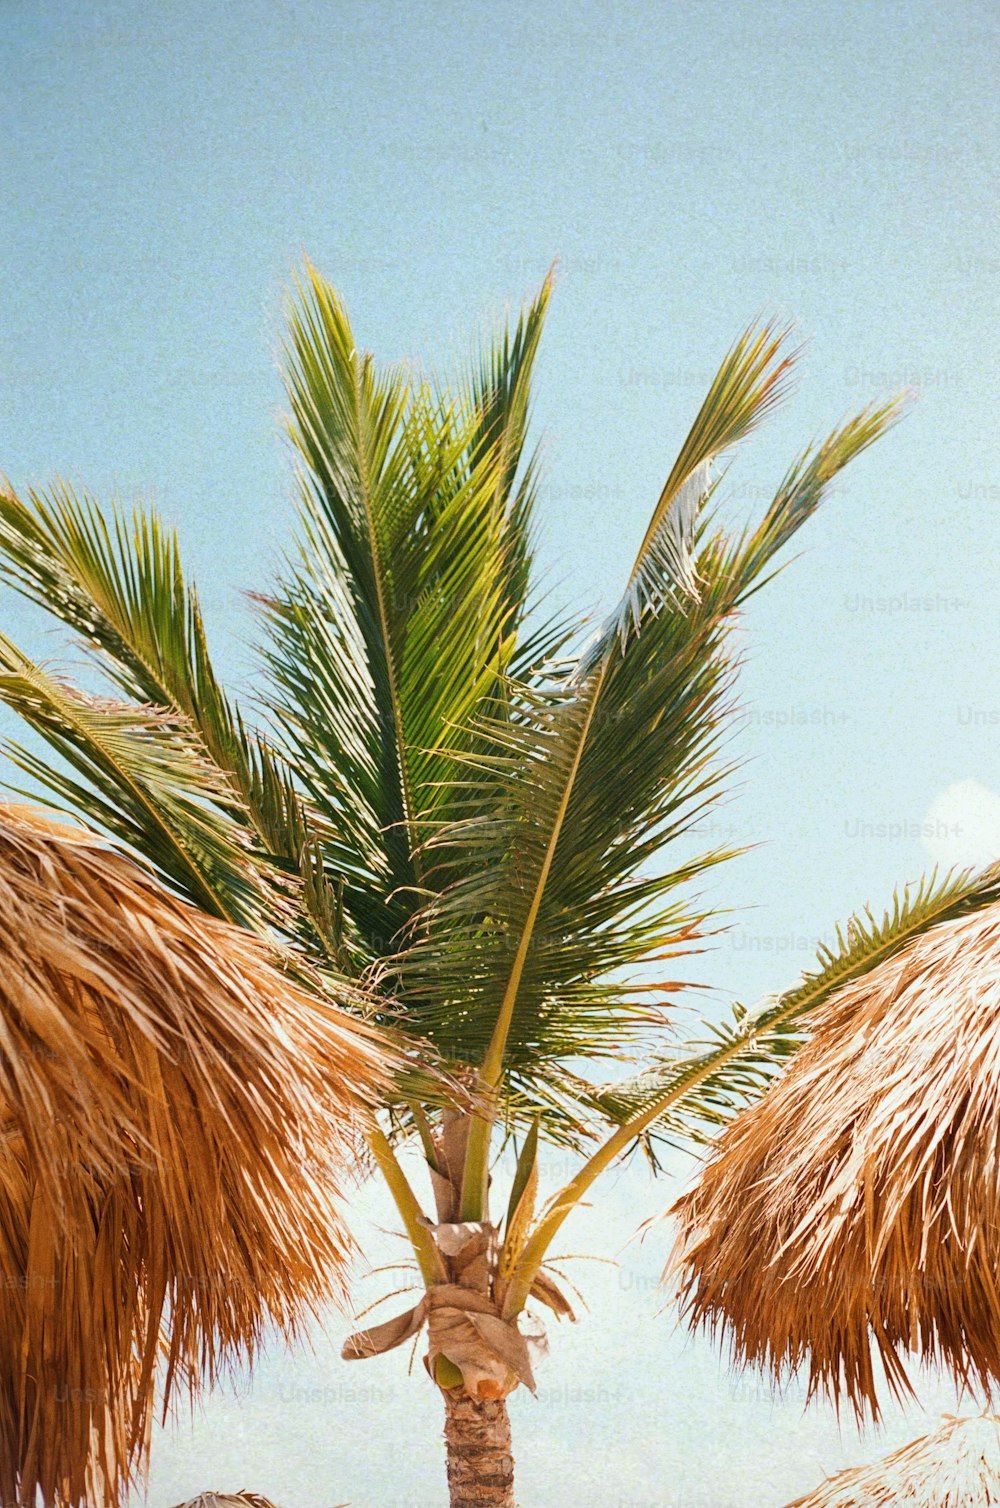 Eine Palme am Strand mit blauem Himmel im Hintergrund